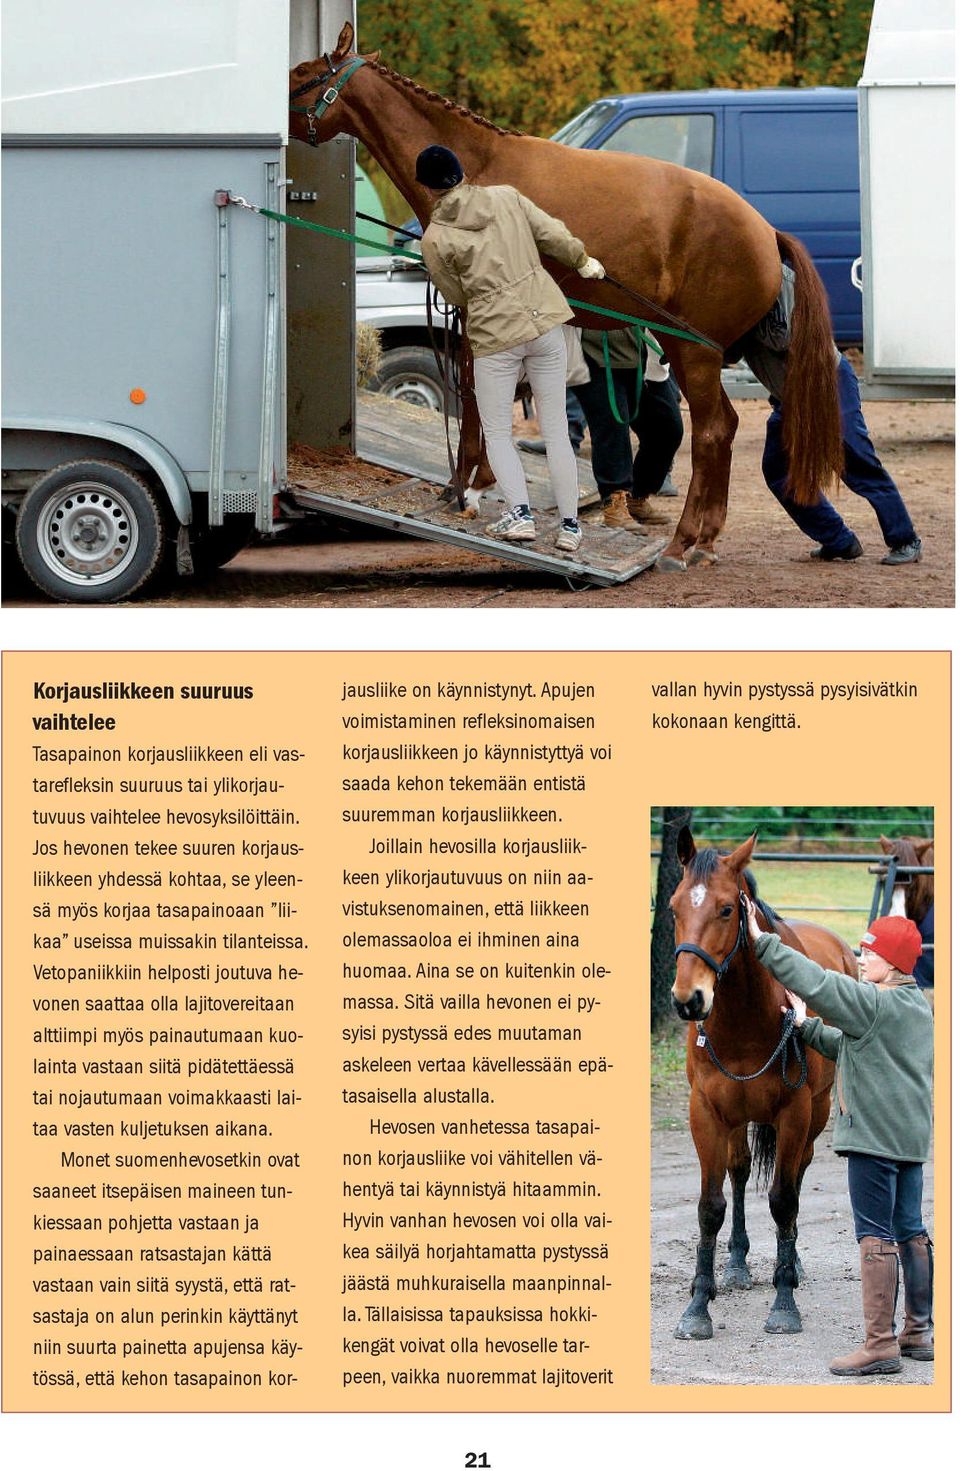 Vetopaniikkiin helposti joutuva hevonen saattaa olla lajitovereitaan alttiimpi myös painautumaan kuolainta vastaan siitä pidätettäessä tai nojautumaan voimakkaasti laitaa vasten kuljetuksen aikana.